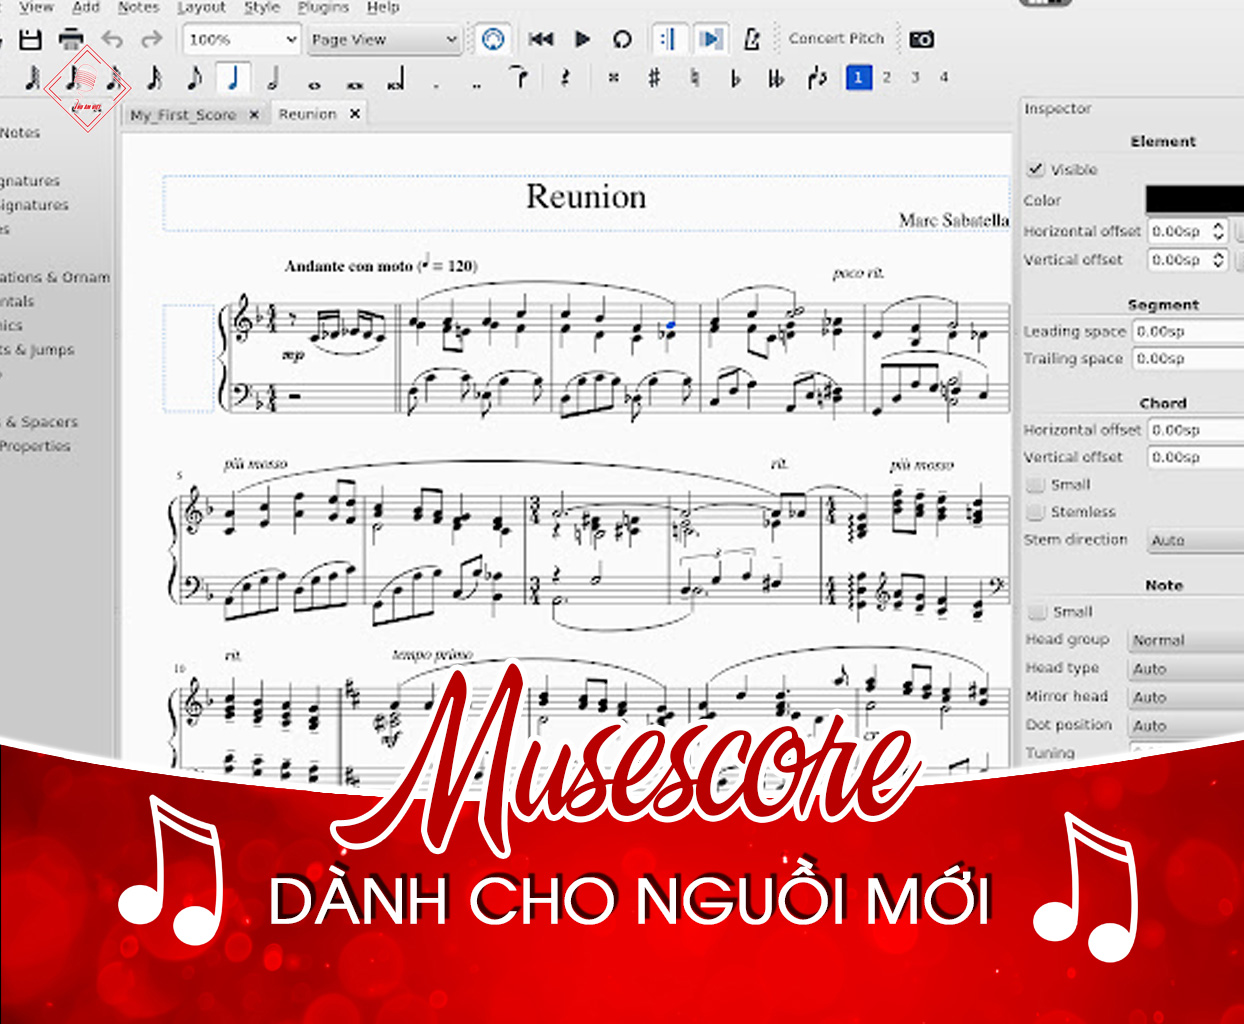 Hướng dẫn soạn nhạc bằng phần mềm Musescore “dễ như ăn cháo”